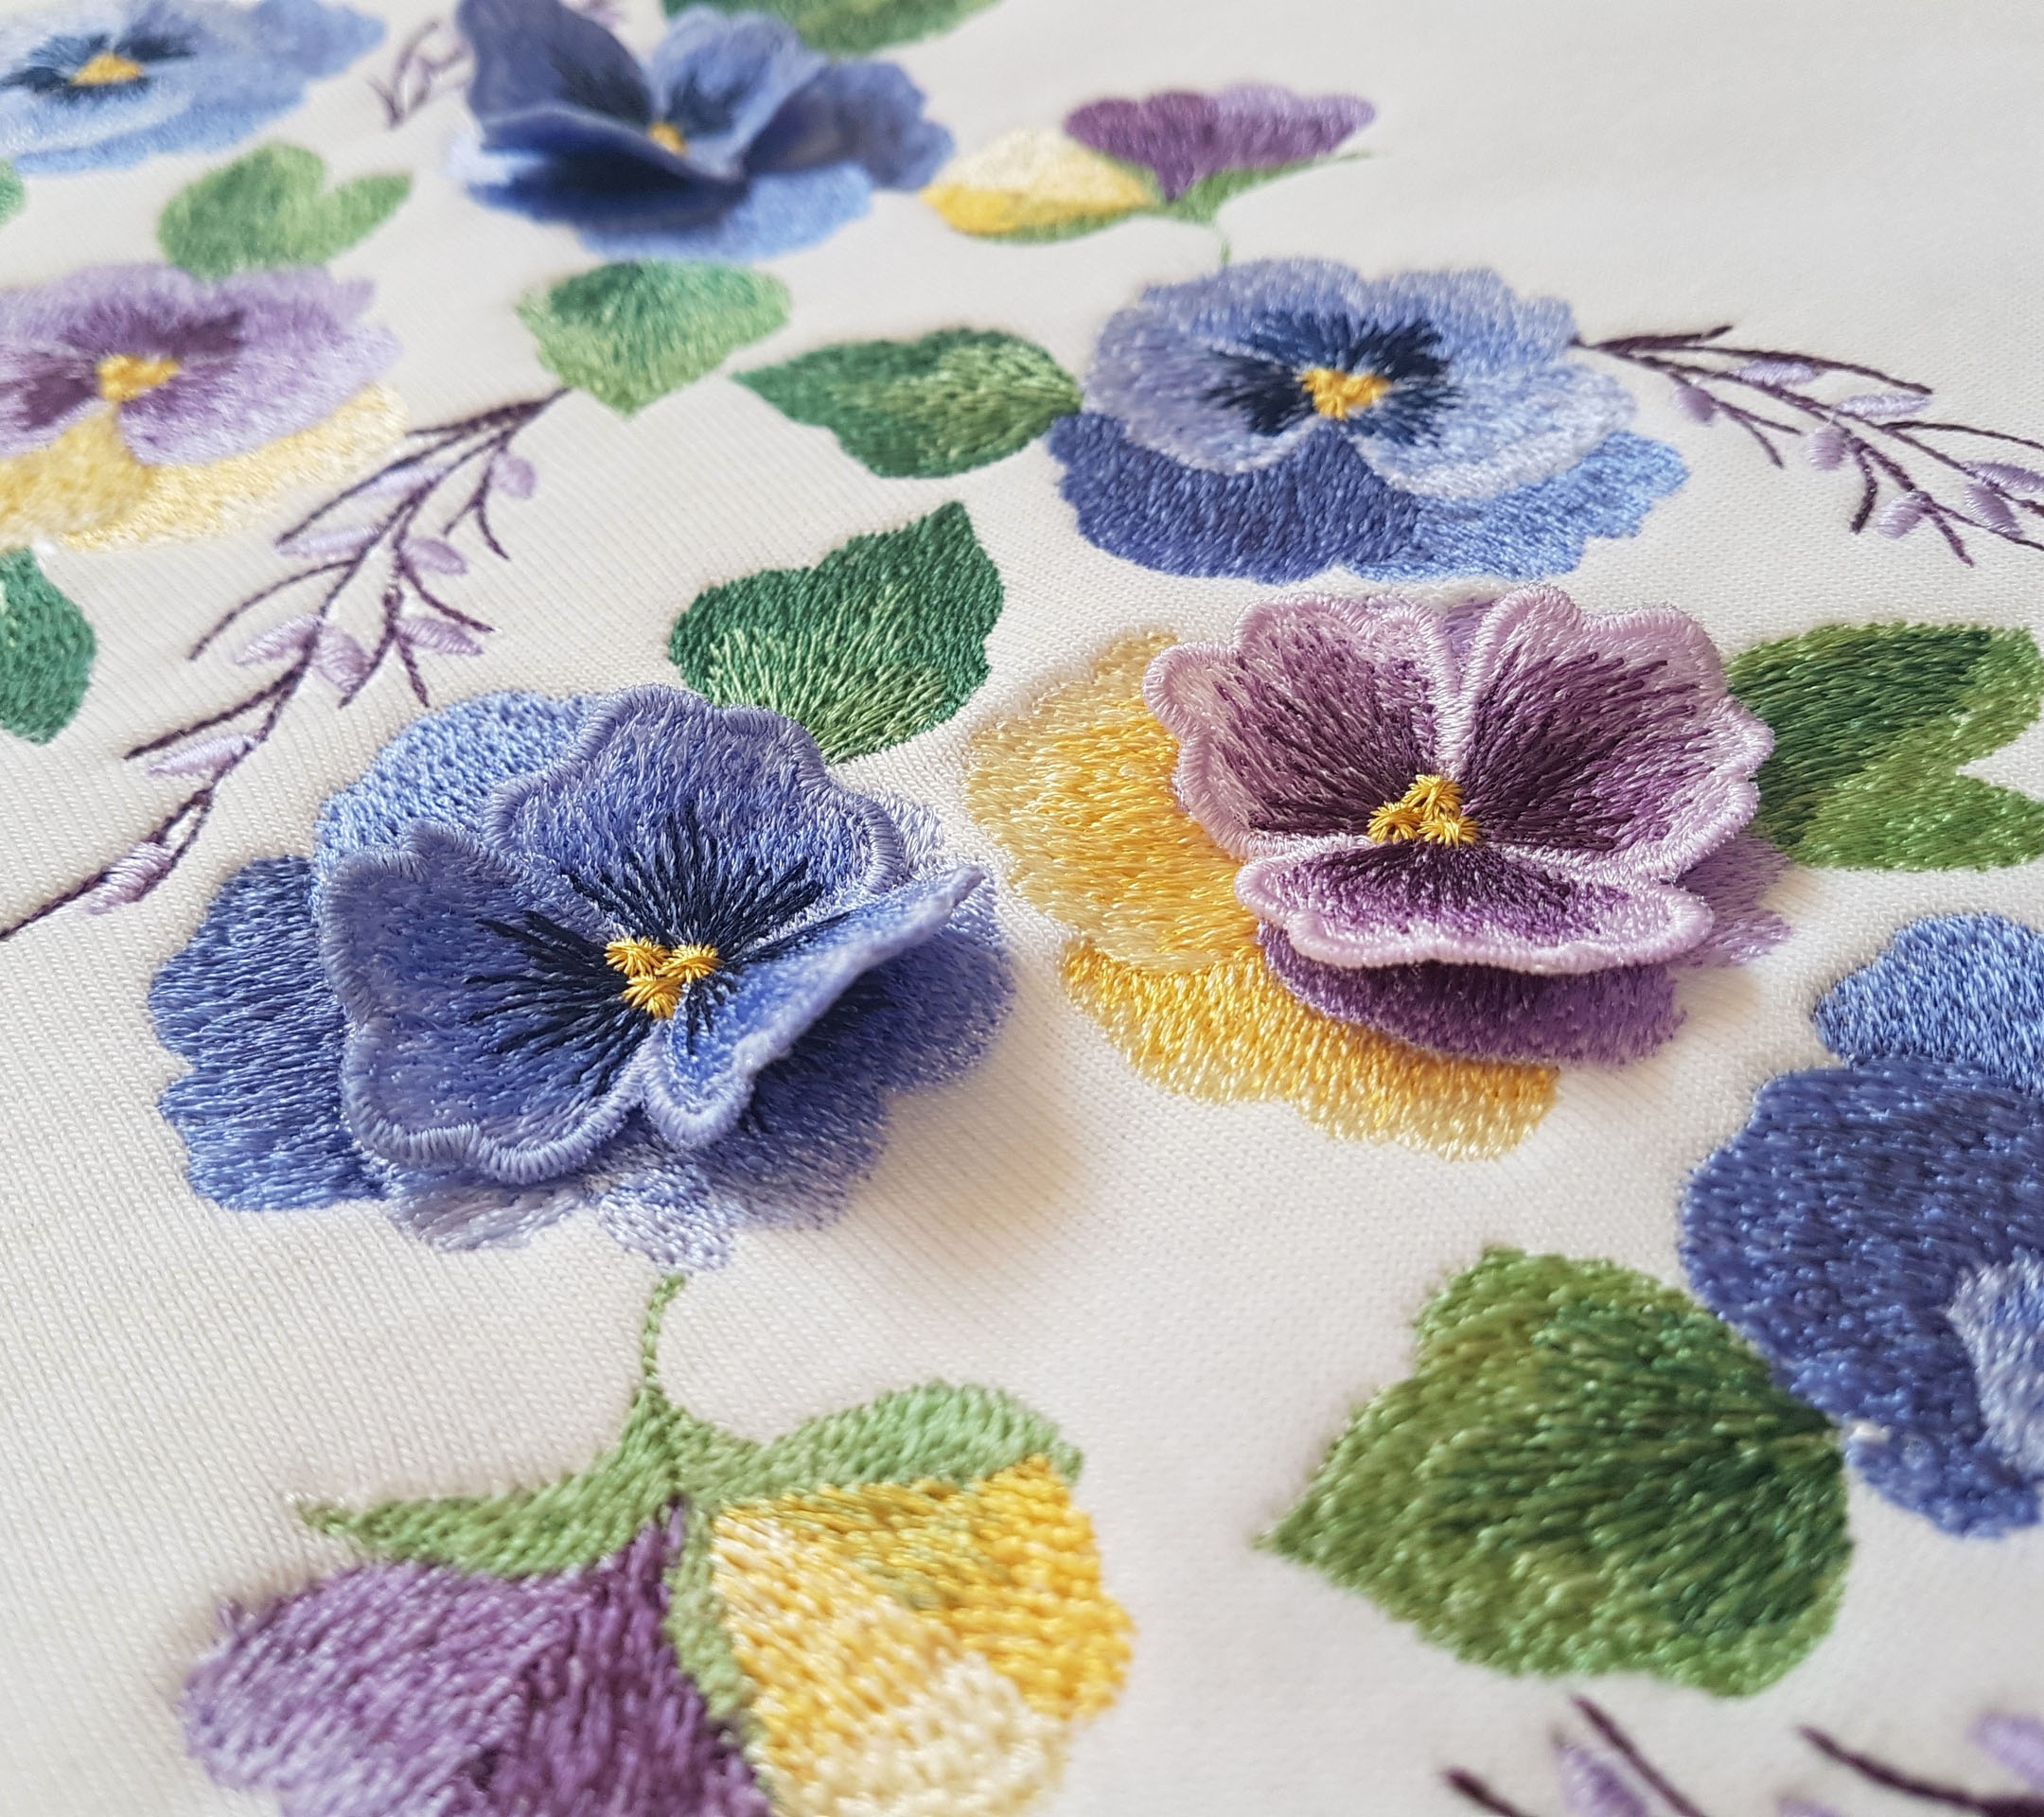 pansies embroidery design.jpg